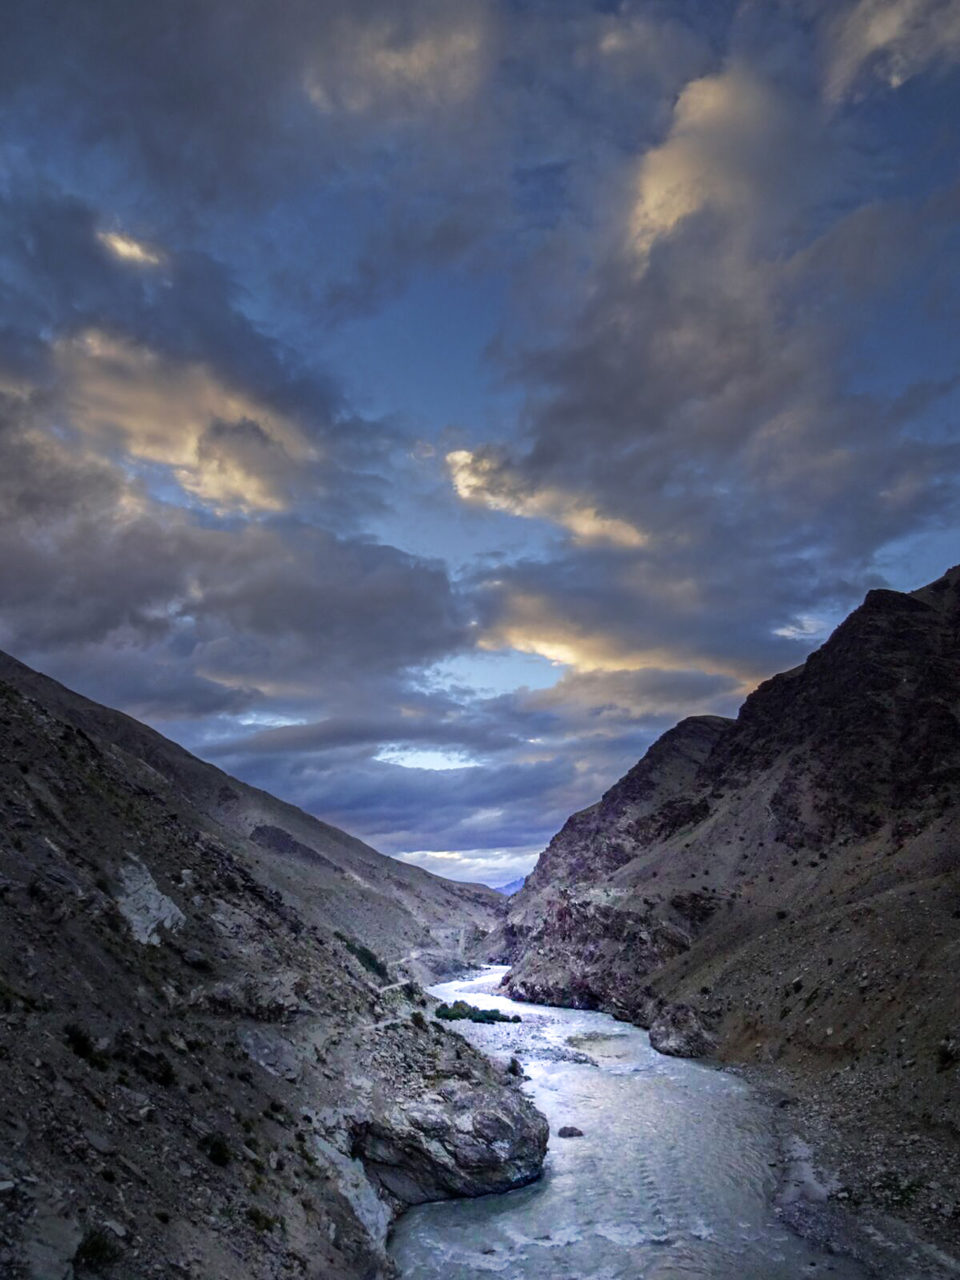 Evening light in the Zanskar Valley in India